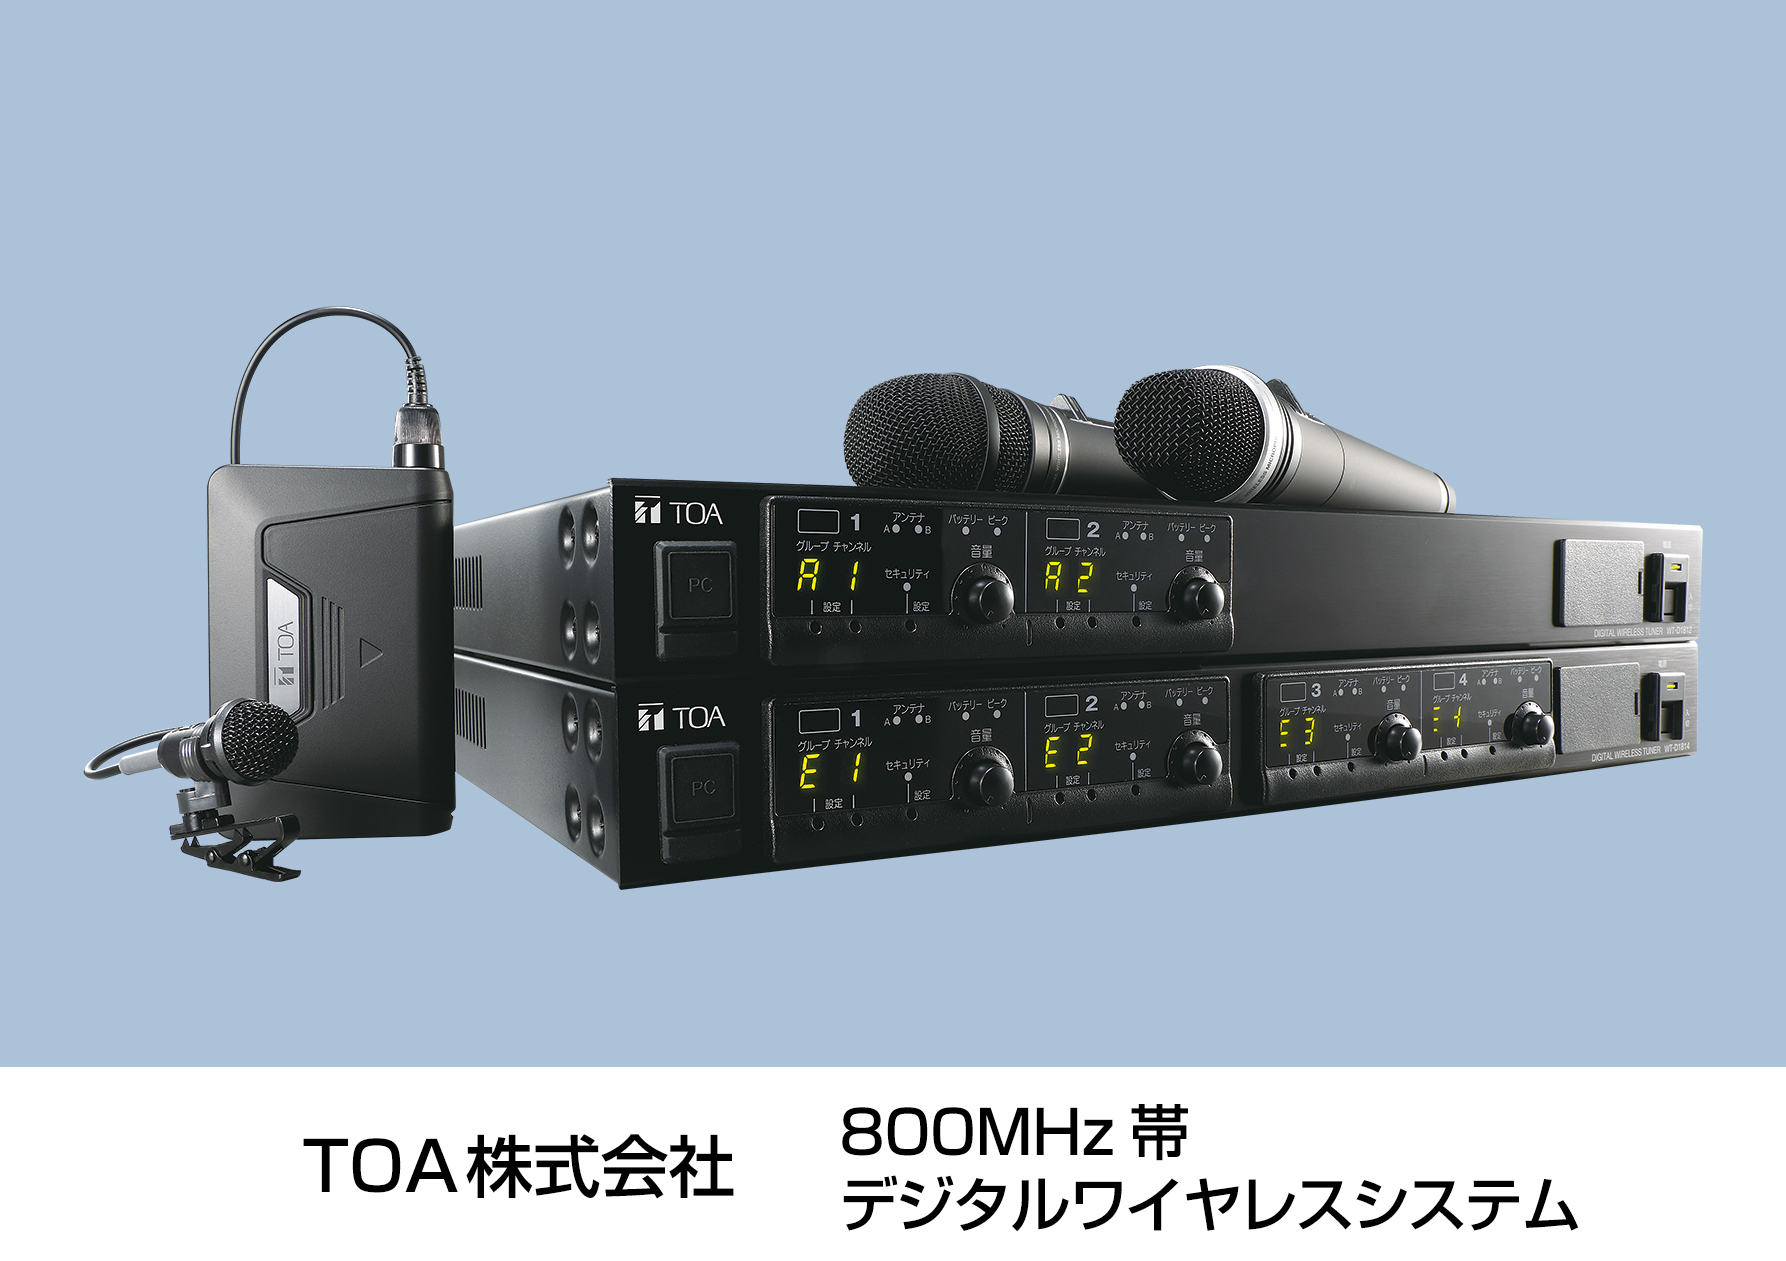 800MHz帯デジタルワイヤレスシステム WM-D1210 | 新商品ニュース 2021年 | TOA株式会社